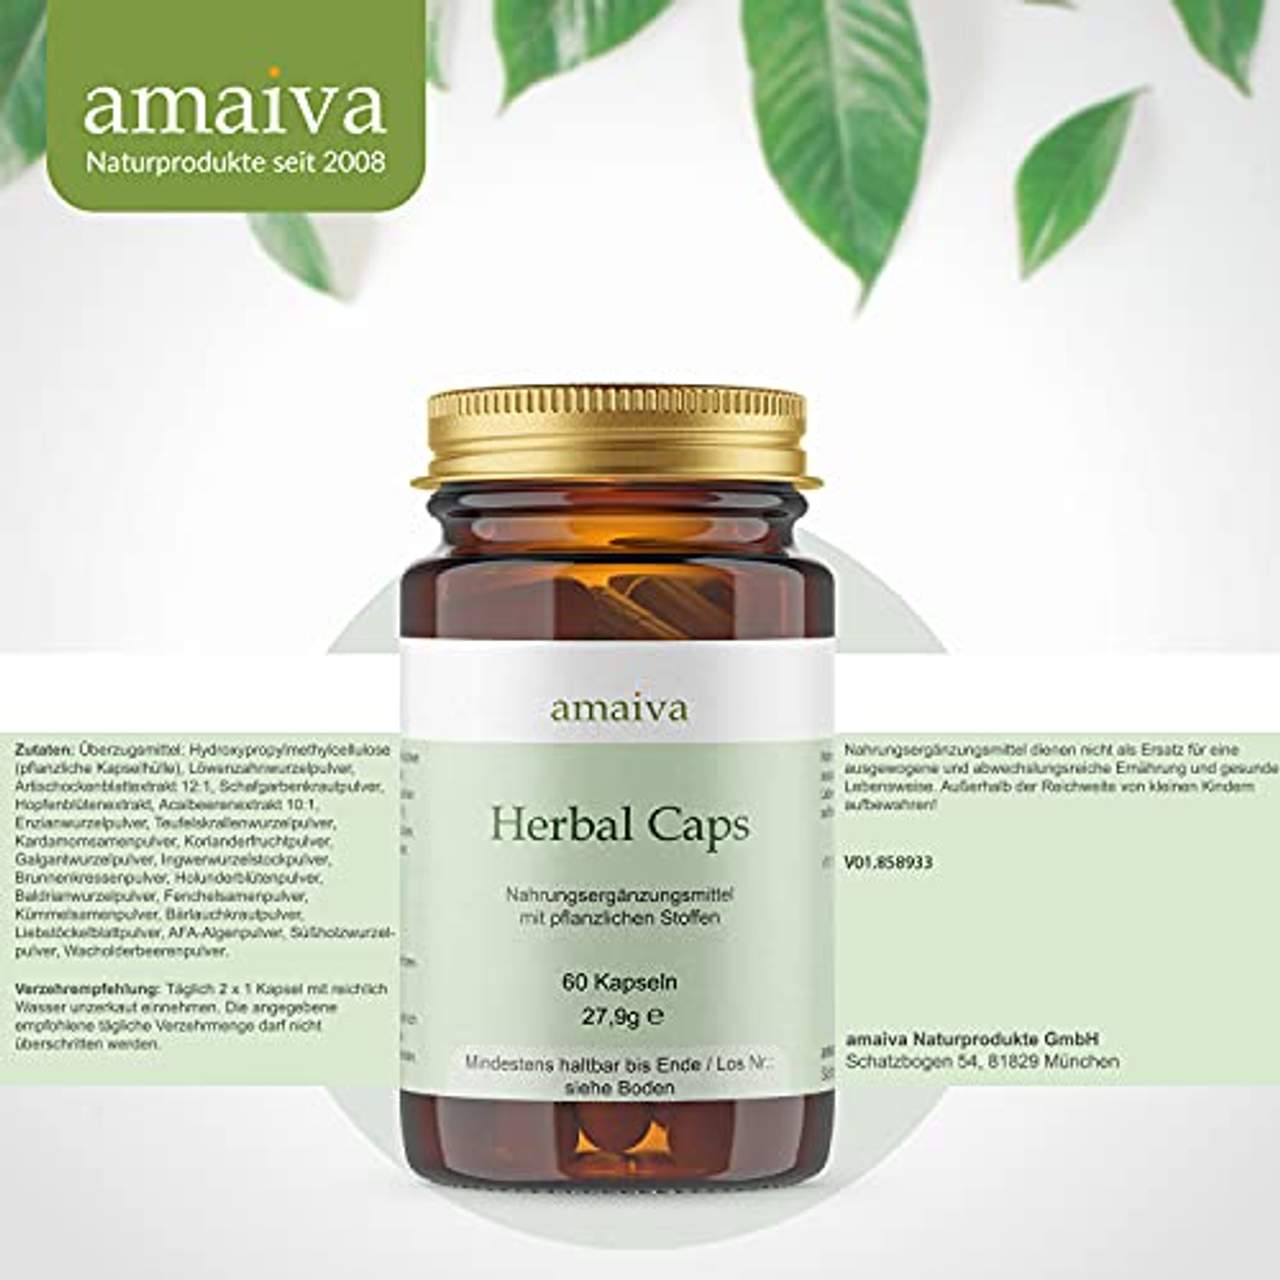 amaiva Naturprodukte Herbal Caps